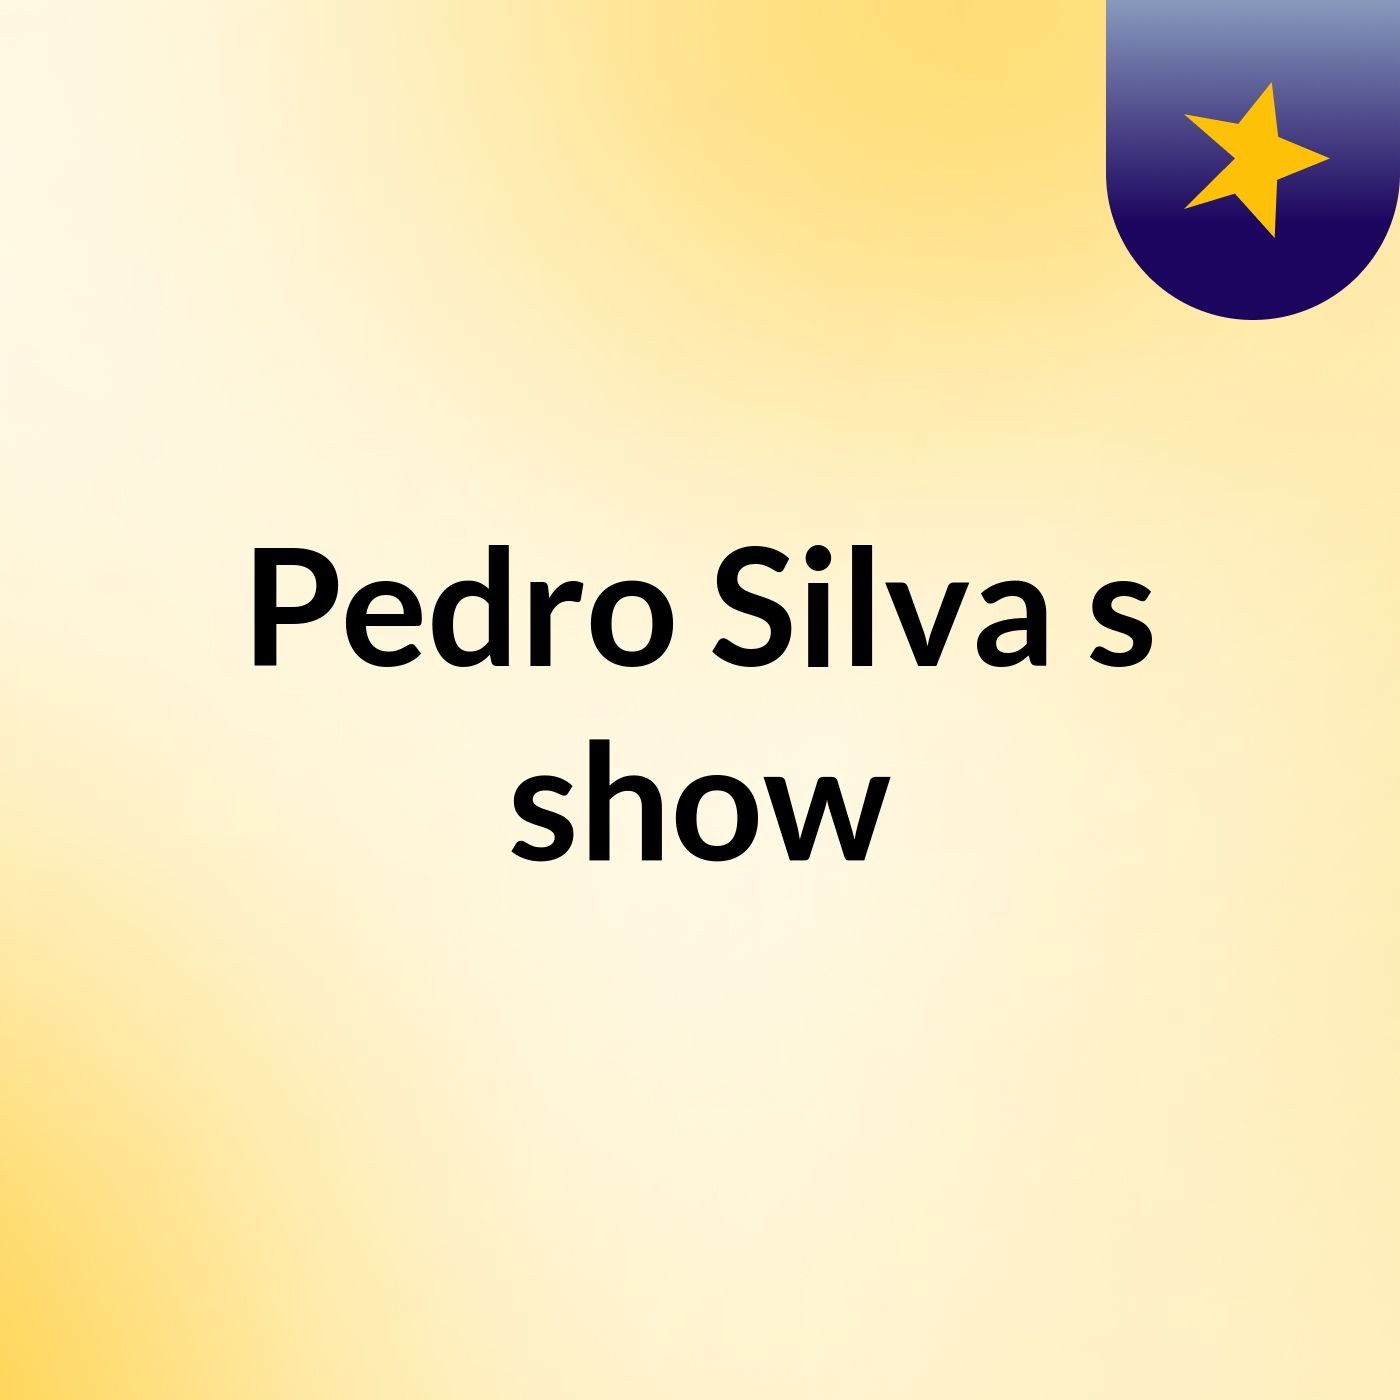 Pedro Silva's show